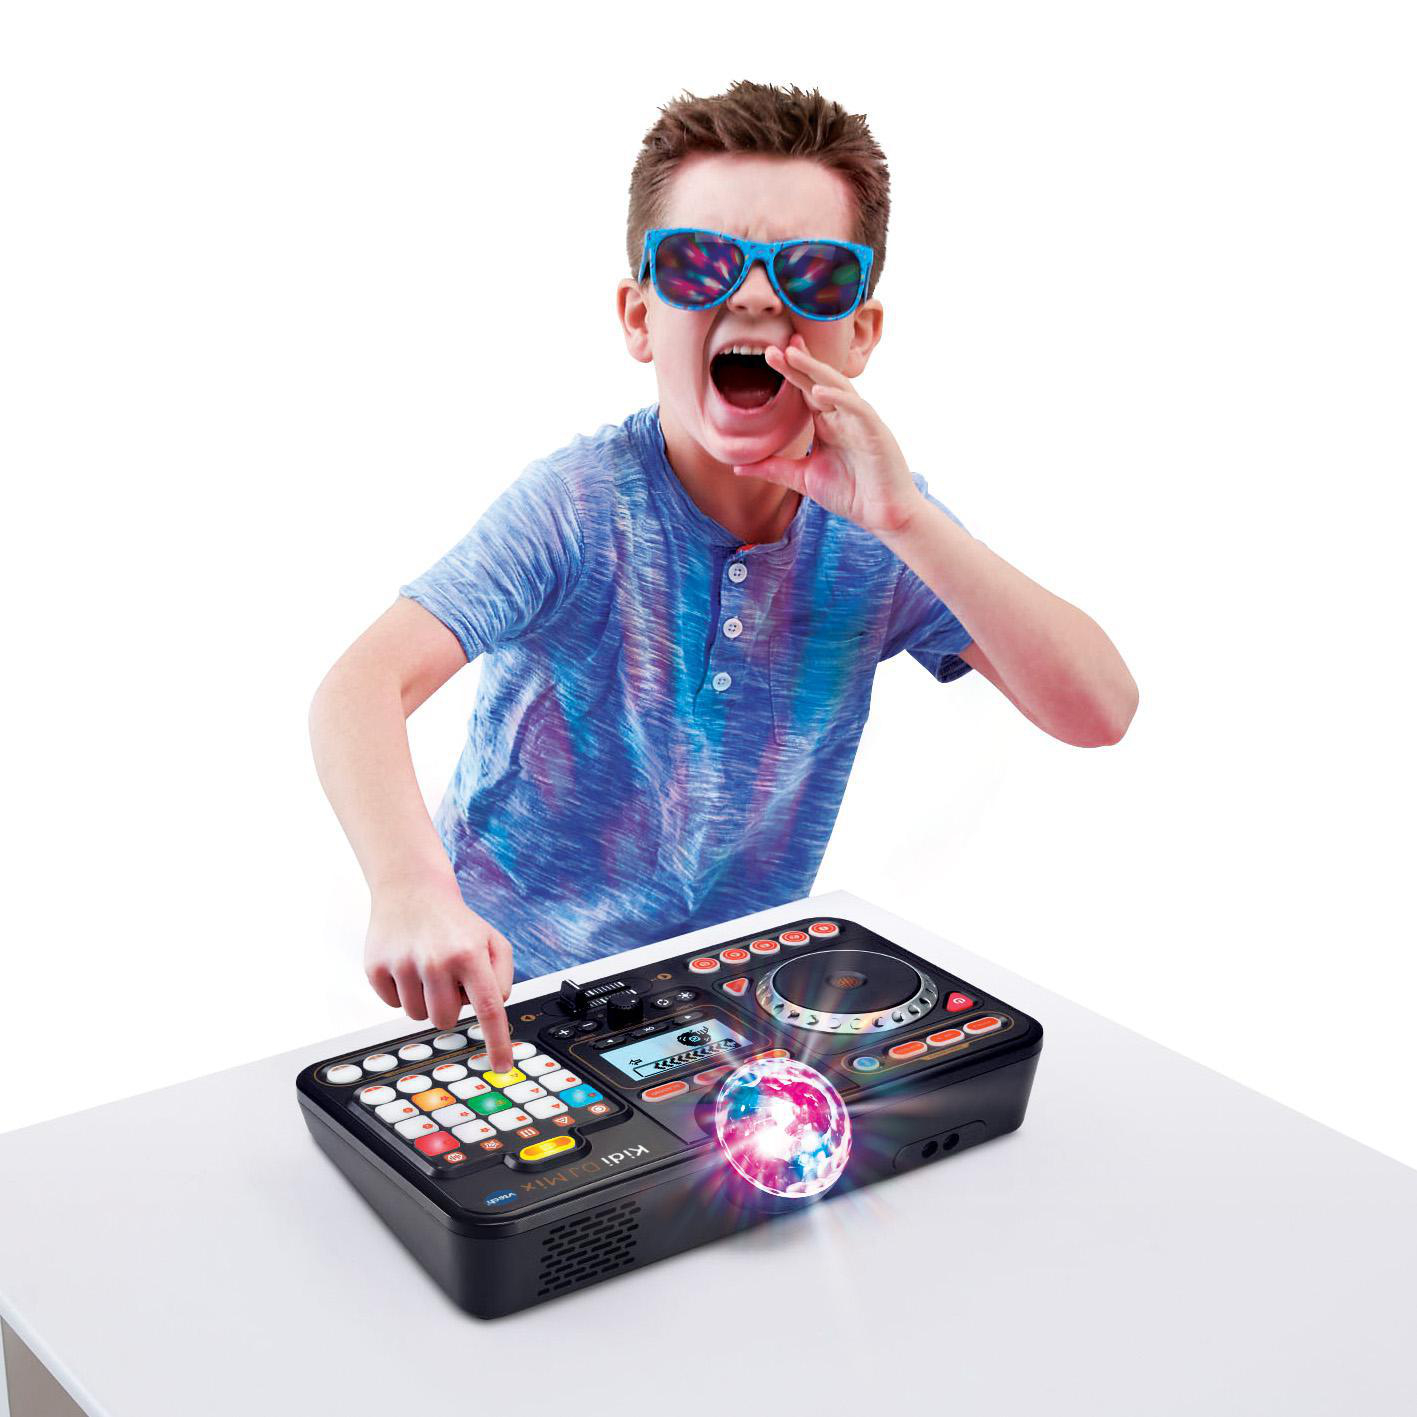 Mix DJ Mehrfarbig Kidi Pult, Kinder-DJ VTECH